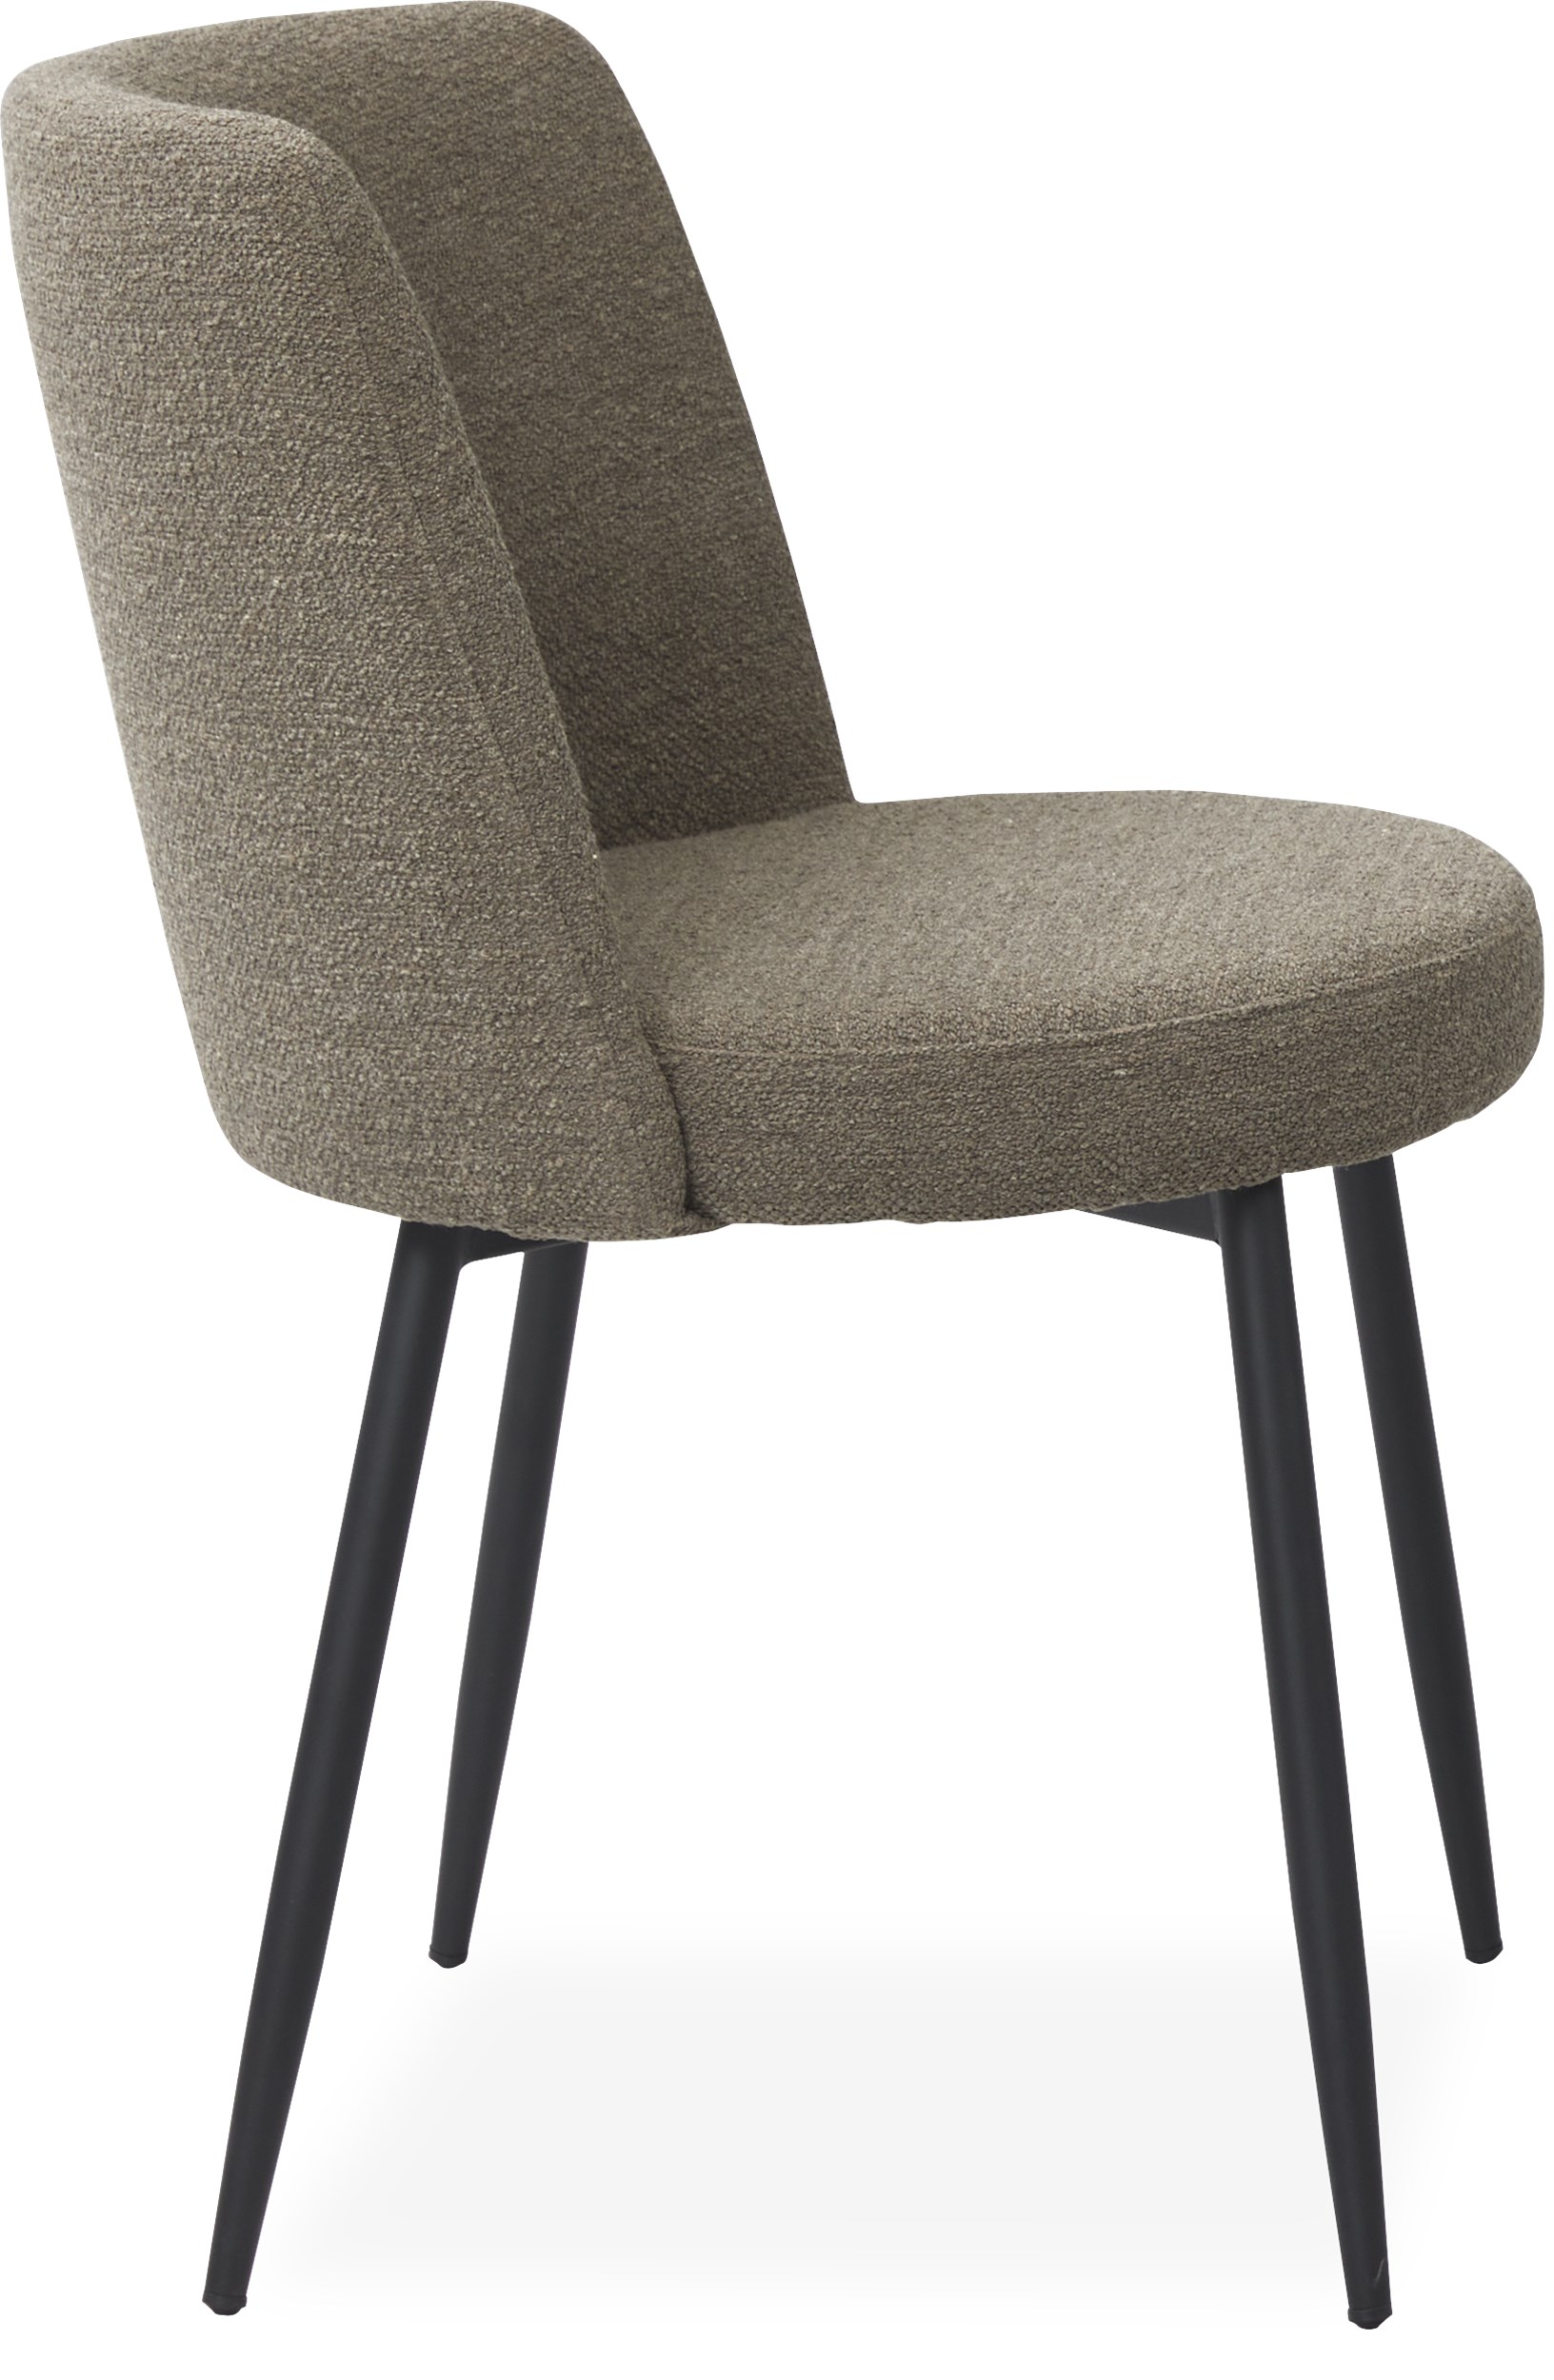 Bray Spisebordsstol - Sæde i 040 taupe boucle stof og ben i sort pulverlakeret metal